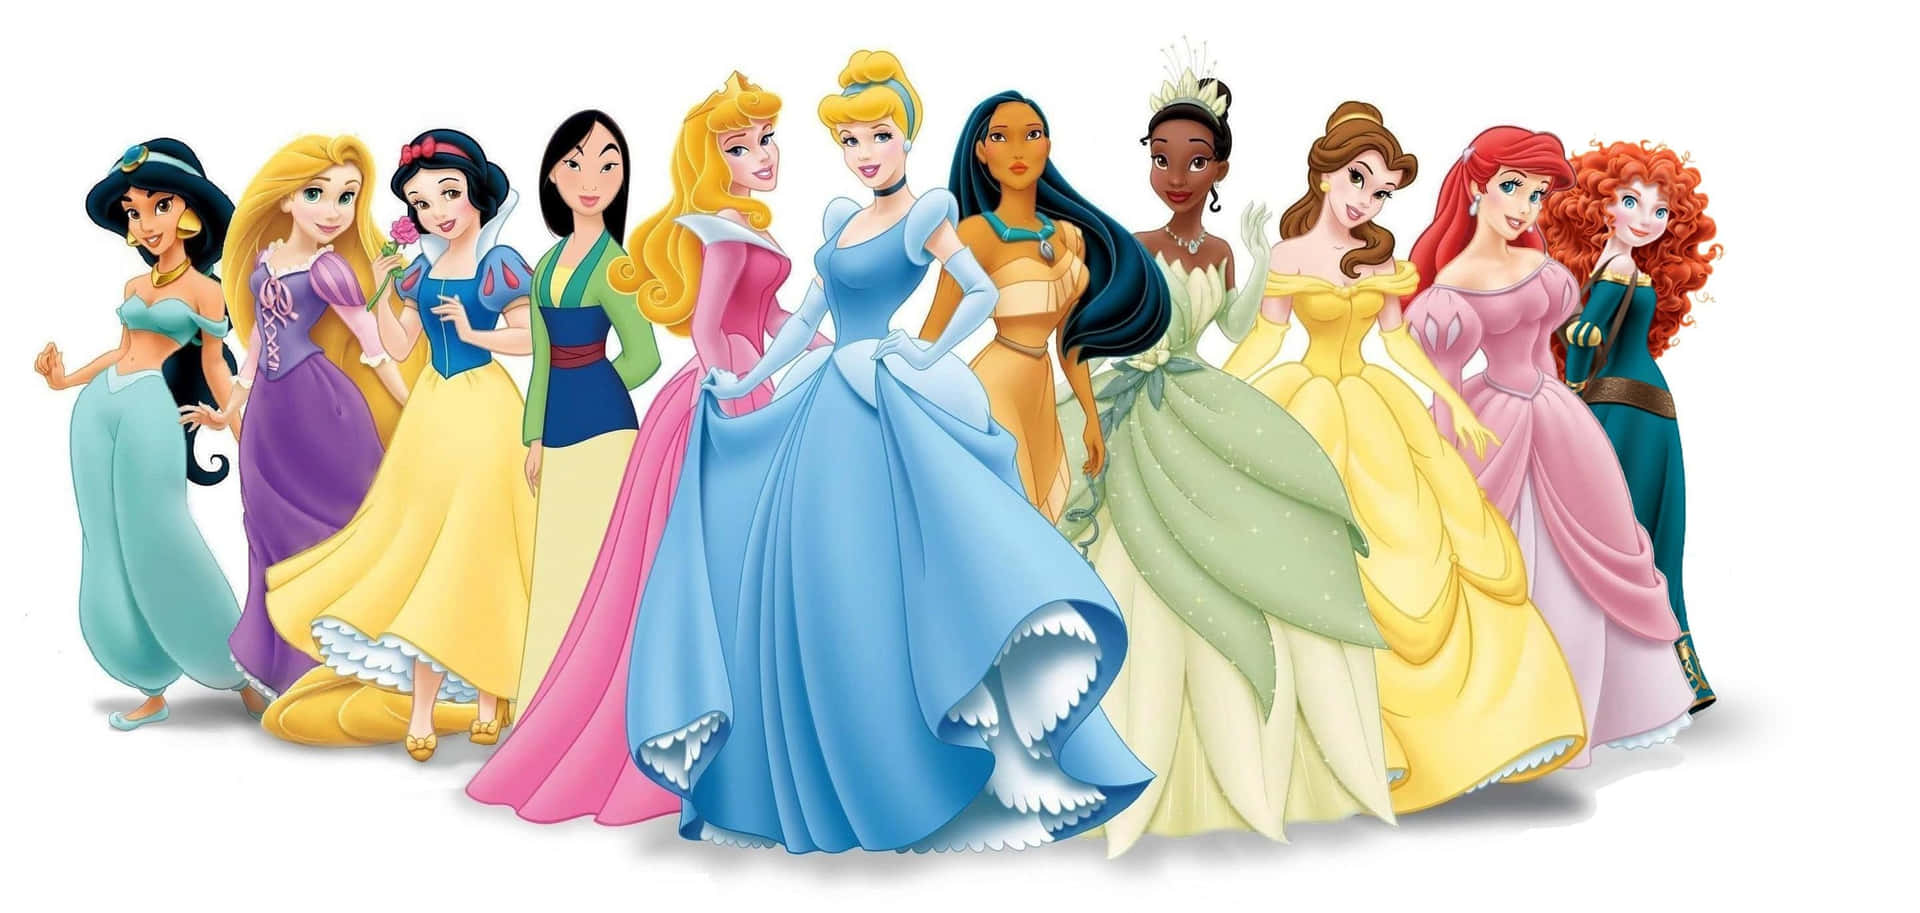 Imagemdos Vestidos Das Princesas Da Disney.